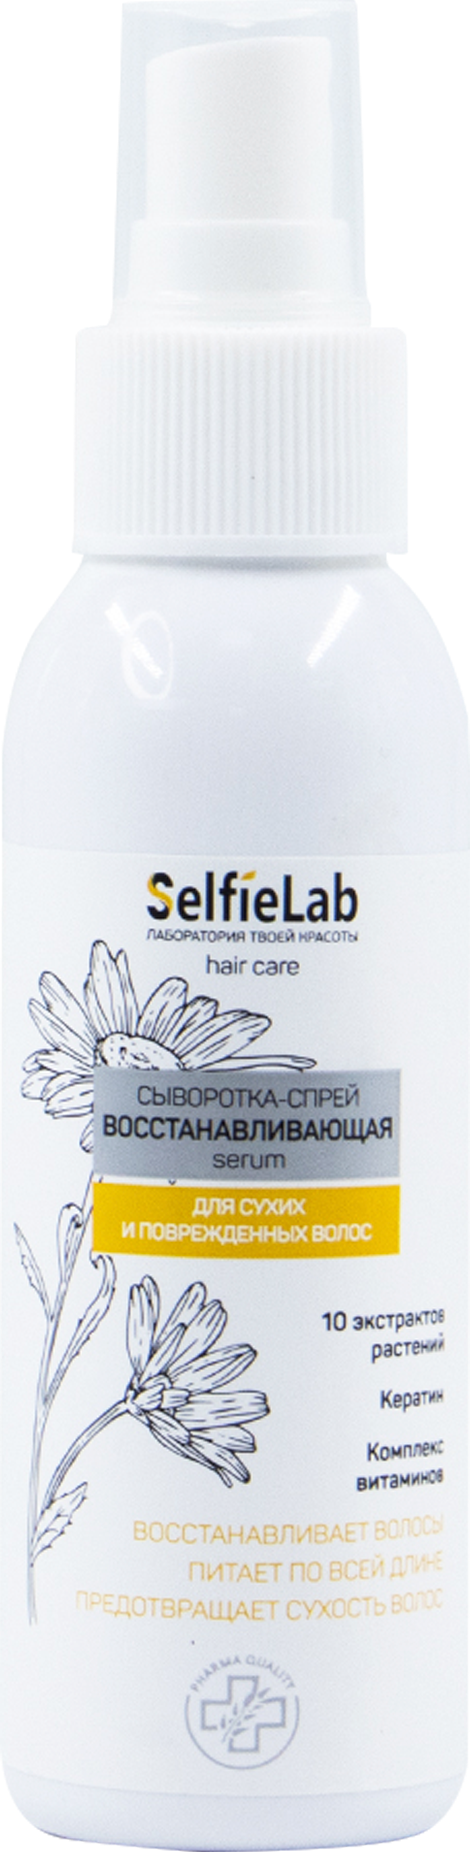 Сыворотка-спрей восстанавливающая, для волос, линия "33 целебных экстракта", товарный знак SelfieLab, флакон 110 мл